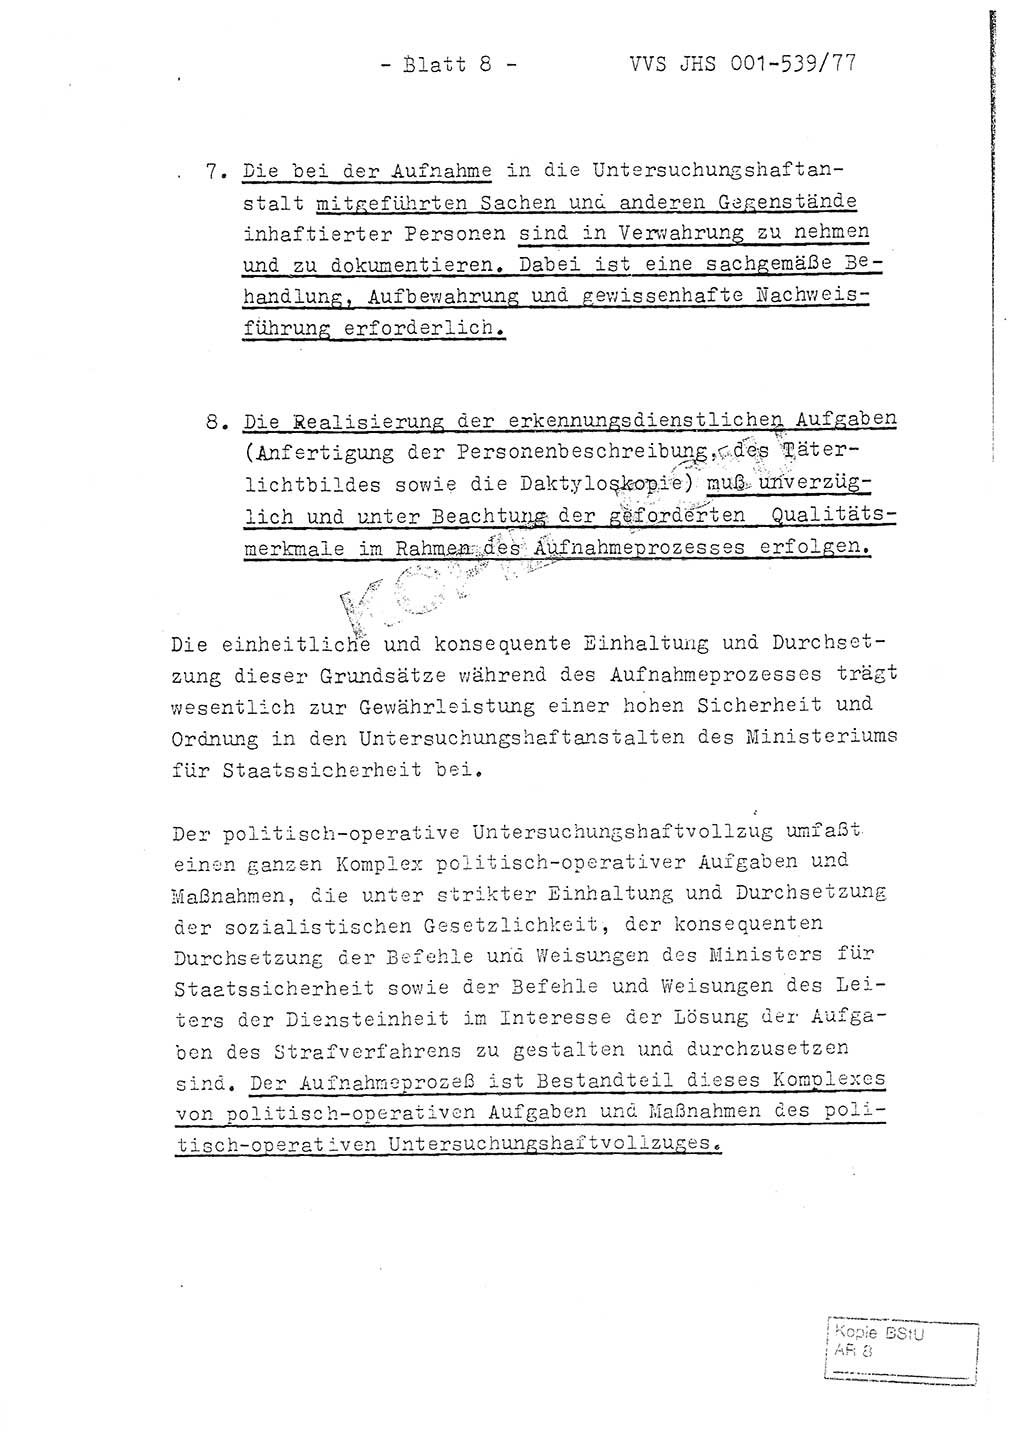 Fachschulabschlußarbeit Hauptmann Dietrich Jung (Abt. ⅩⅣ), Leutnant Klaus Klötzner (Abt. ⅩⅣ), Ministerium für Staatssicherheit (MfS) [Deutsche Demokratische Republik (DDR)], Juristische Hochschule (JHS), Vertrauliche Verschlußsache (VVS) 001-539/77, Potsdam 1978, Seite 8 (FS-Abschl.-Arb. MfS DDR JHS VVS 001-539/77 1978, S. 8)